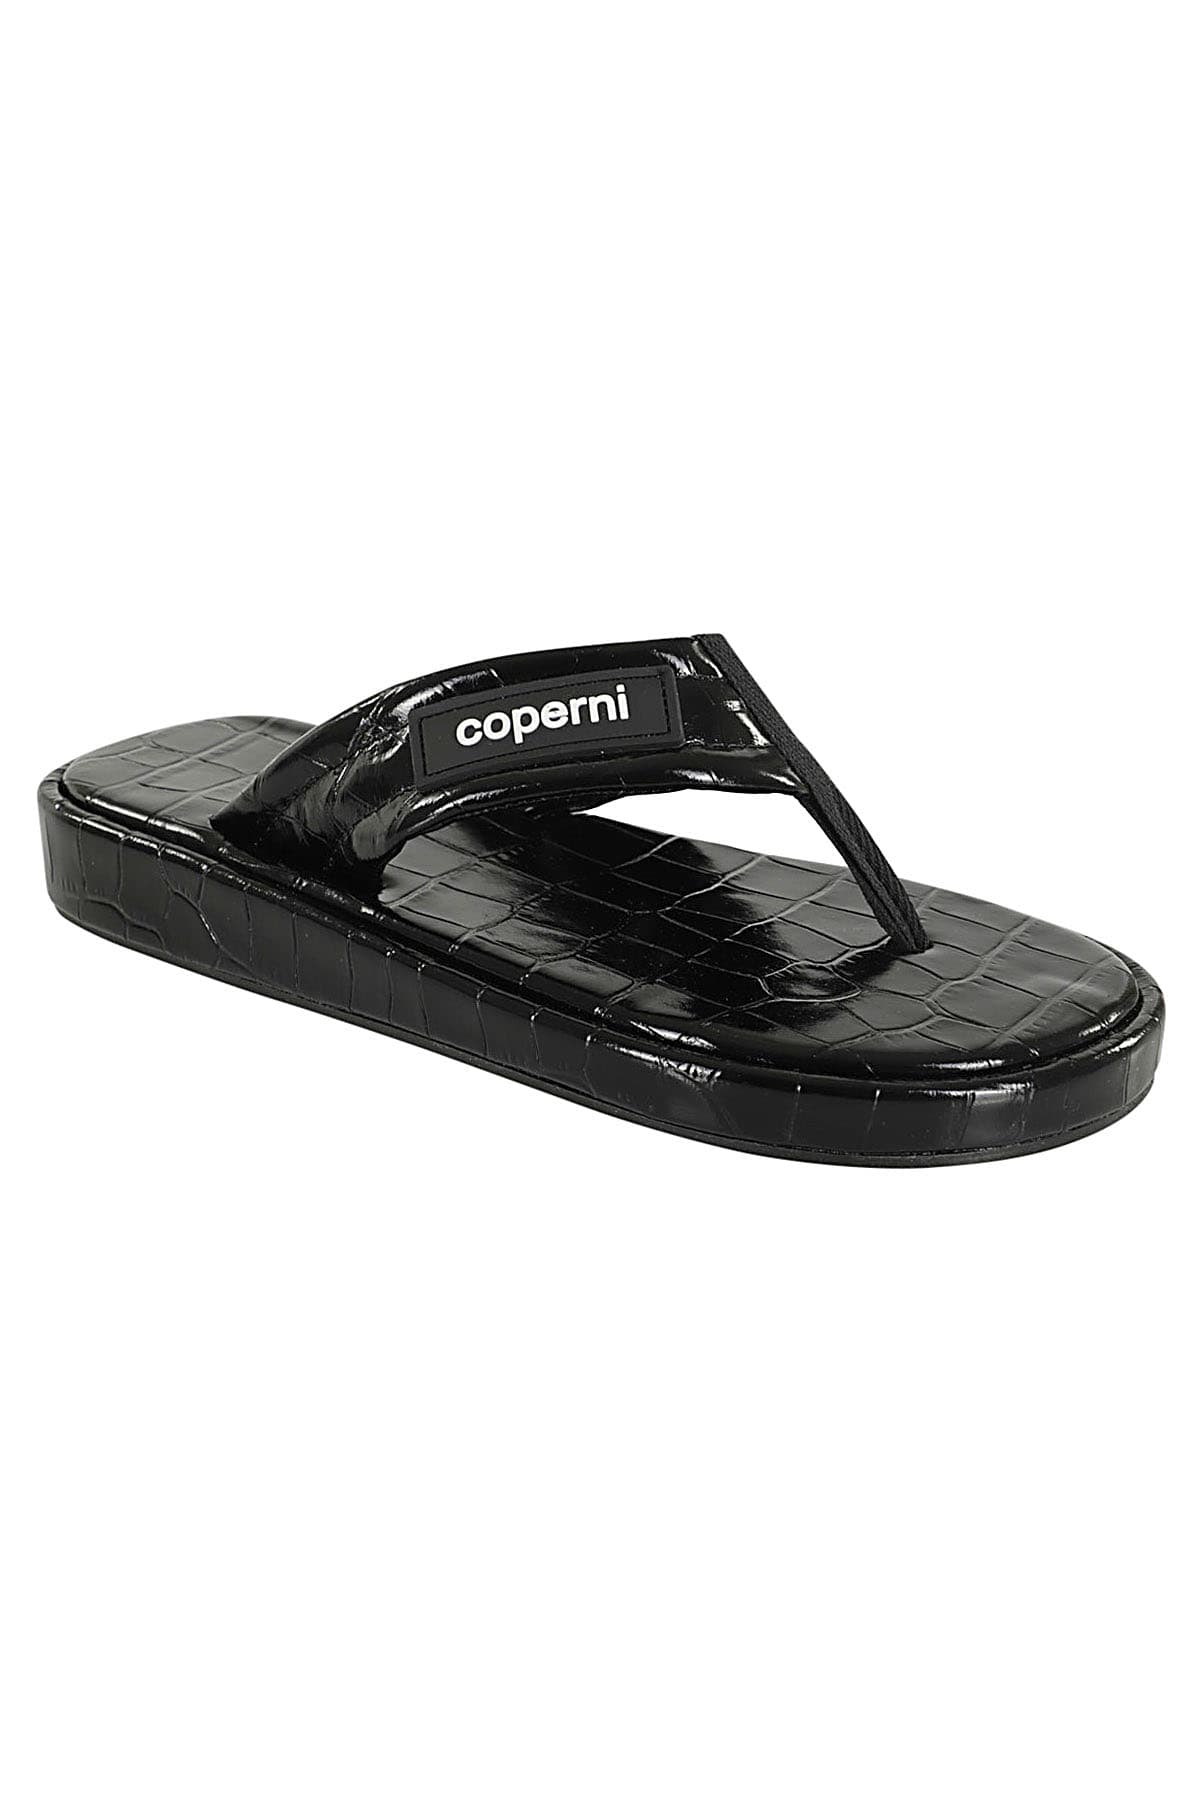 Shop Coperni Croco Branded In Black